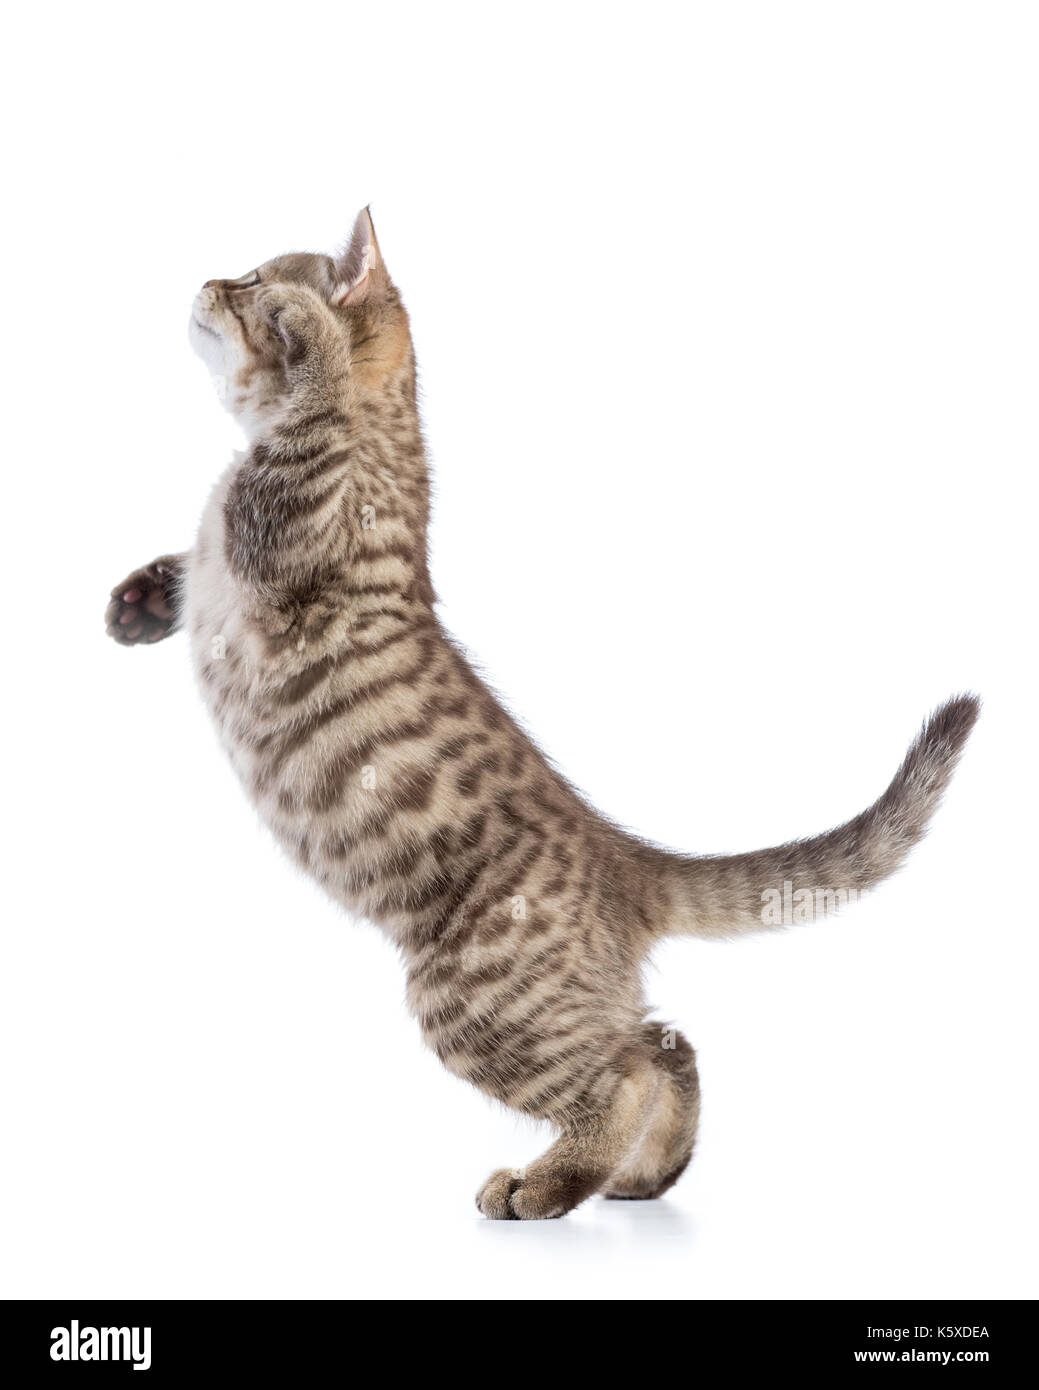 Spielerische tabby Katze Kätzchen im Profil, auf weißem Hintergrund Stockfoto